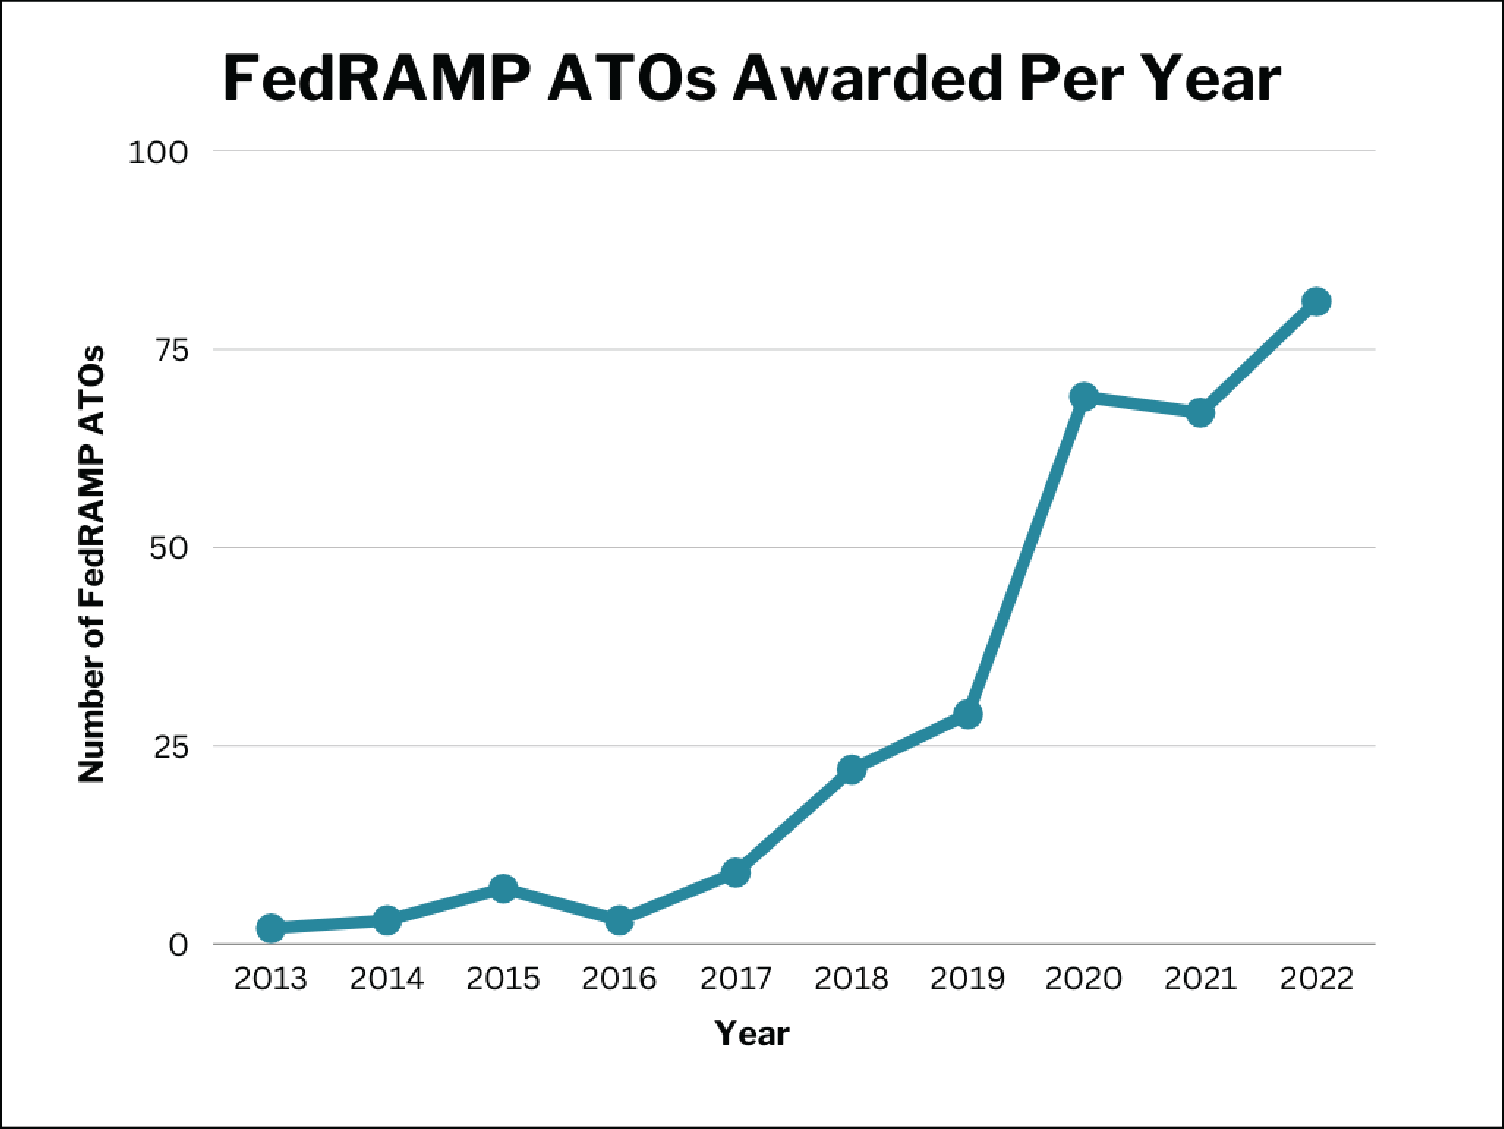 FedRAMP ATOs Awarded Per Year